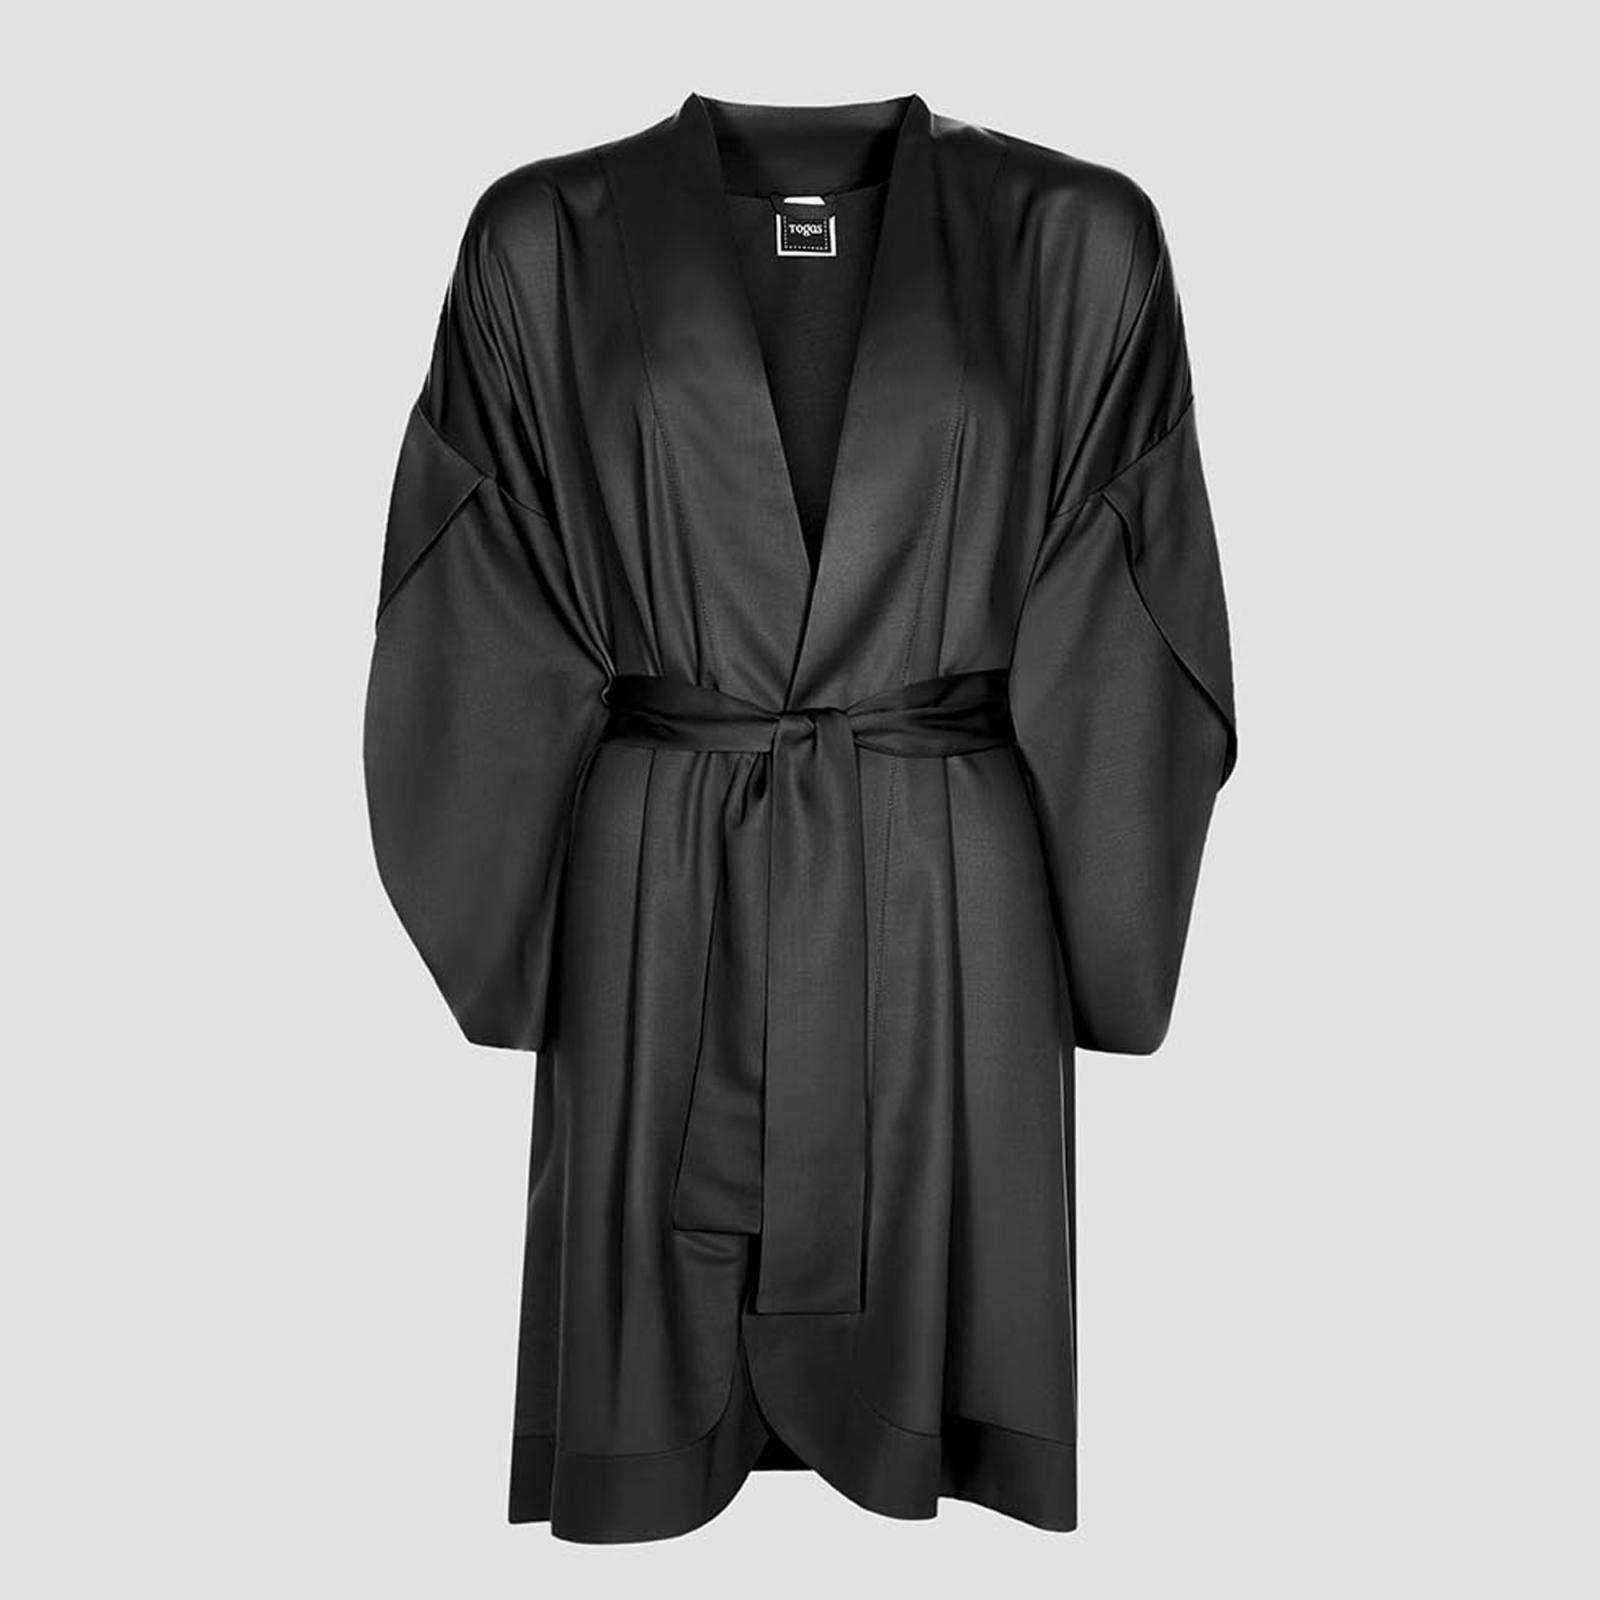 Халат-кимоно короткое Togas Наоми чёрное XL (50) платье кимоно